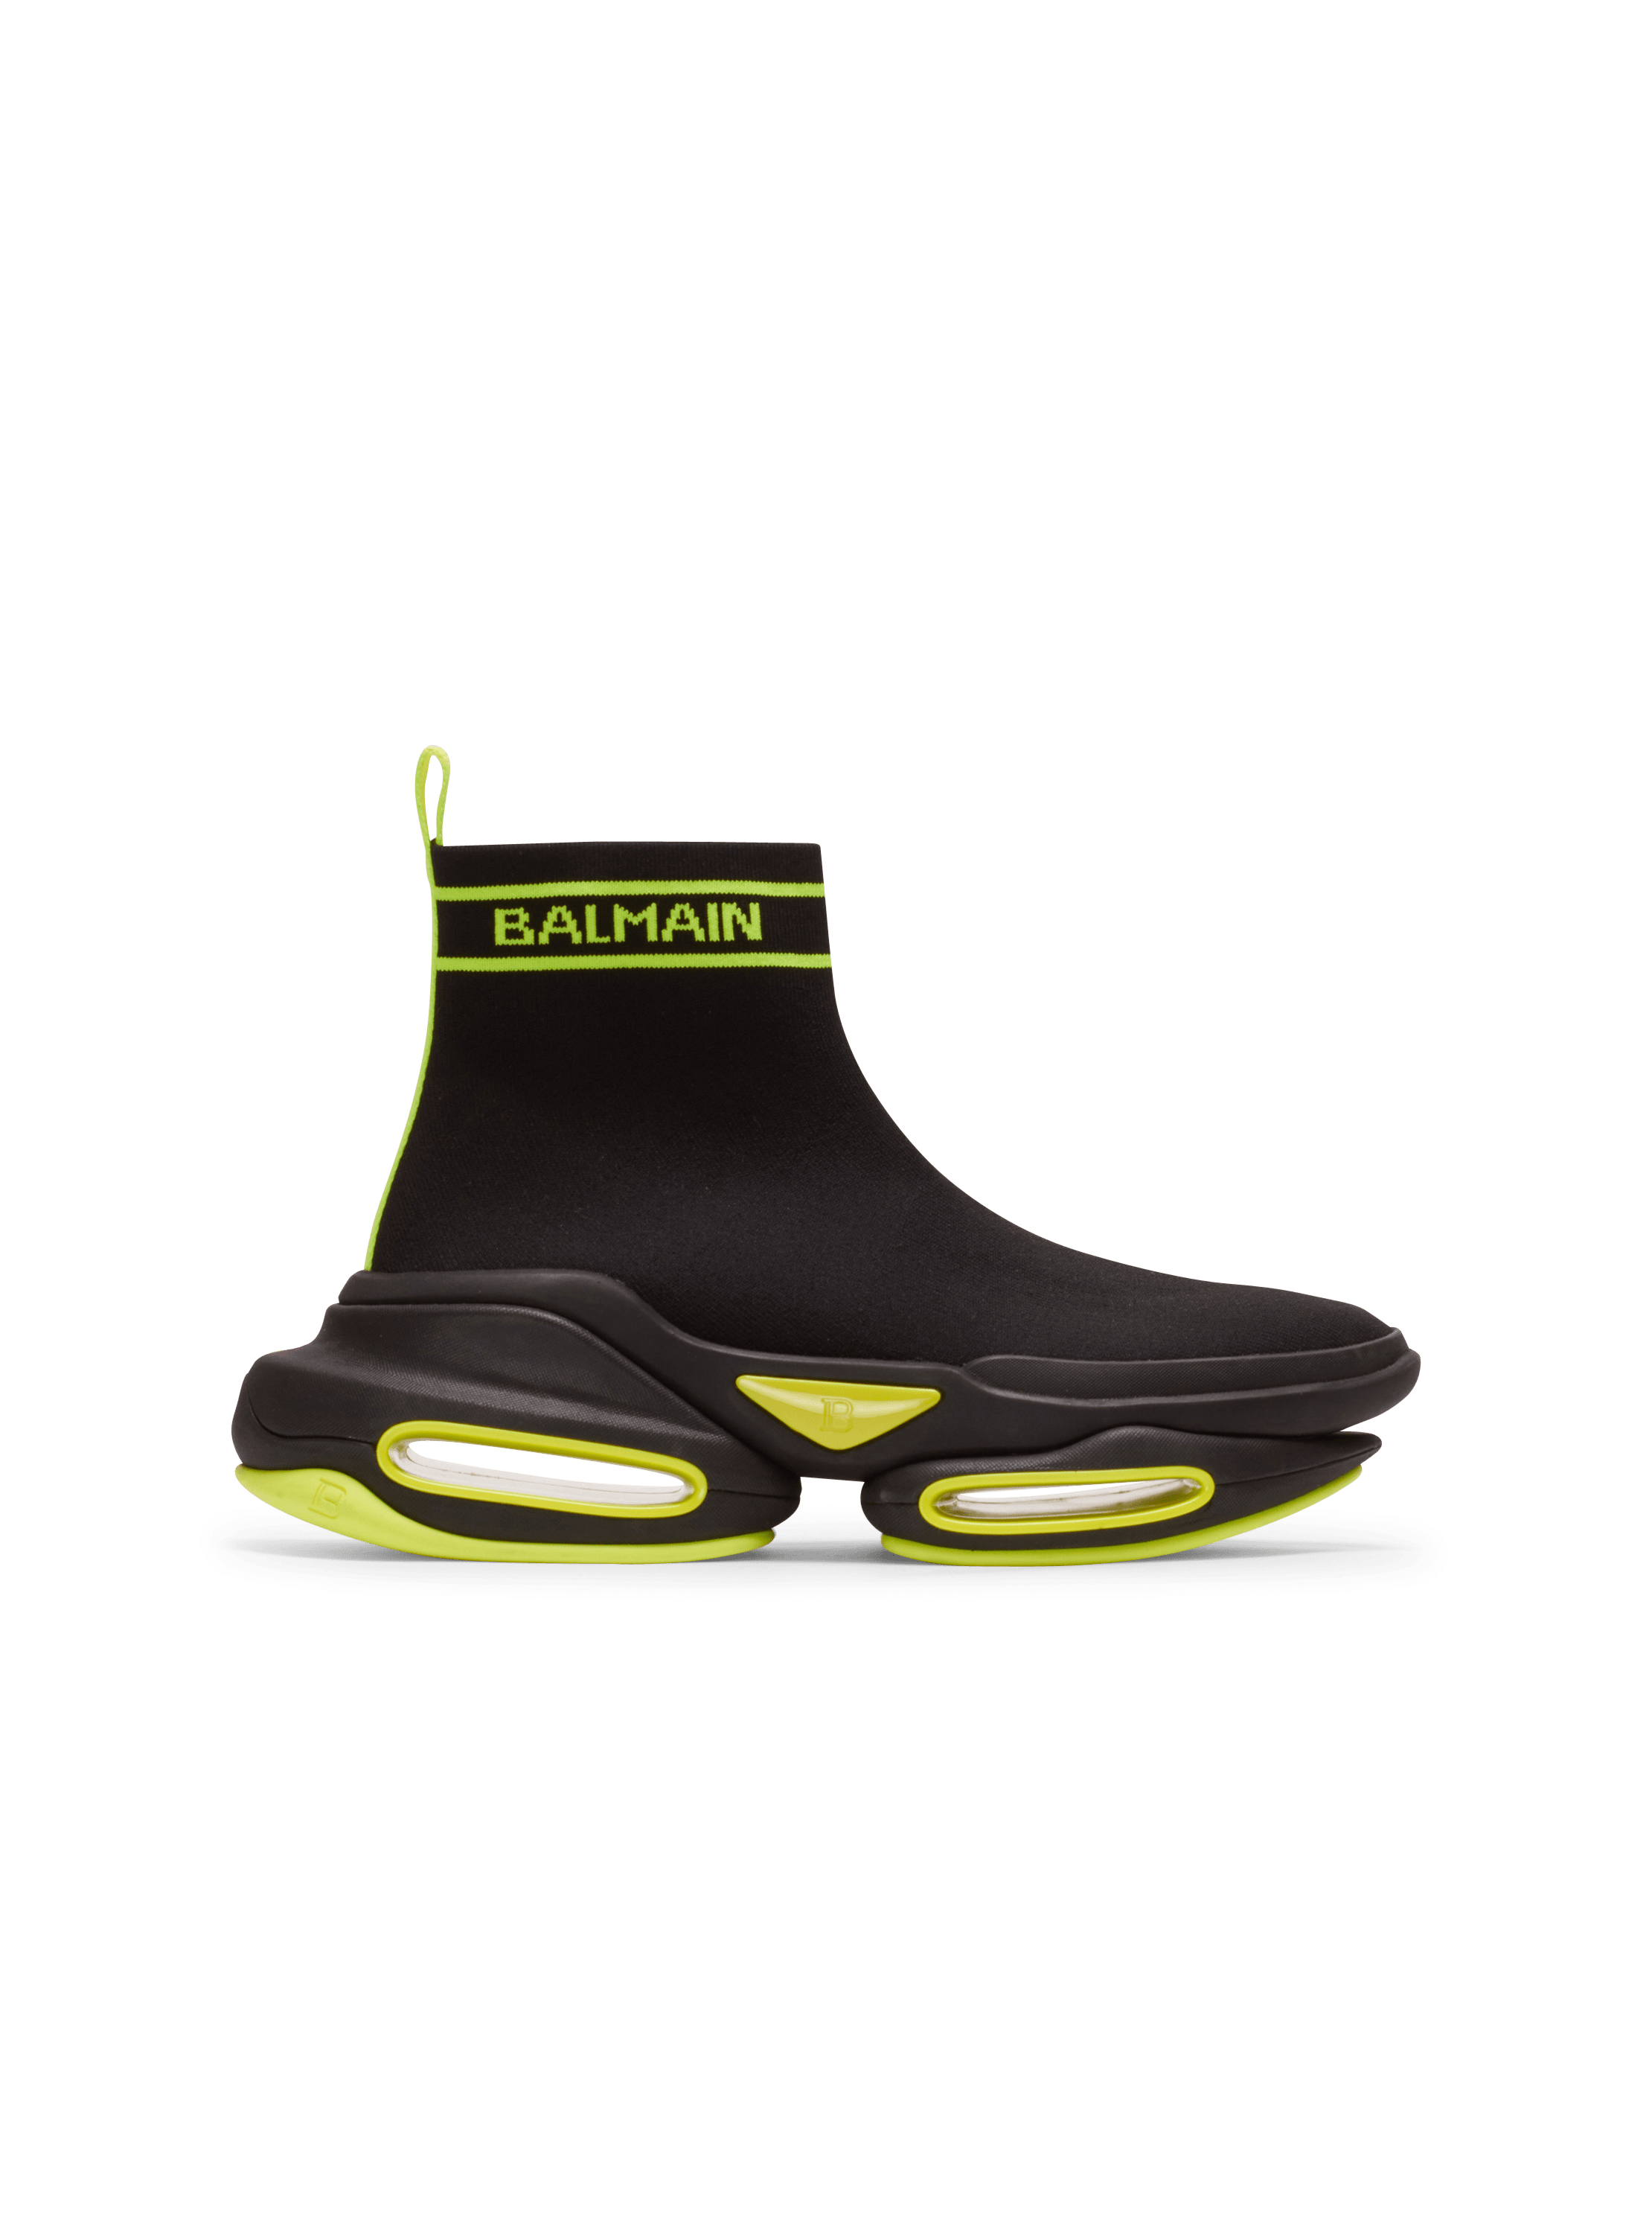 High-Top-Sneakers B-Bold aus Mesh mit Balmain-Logo, schwarz, hi-res